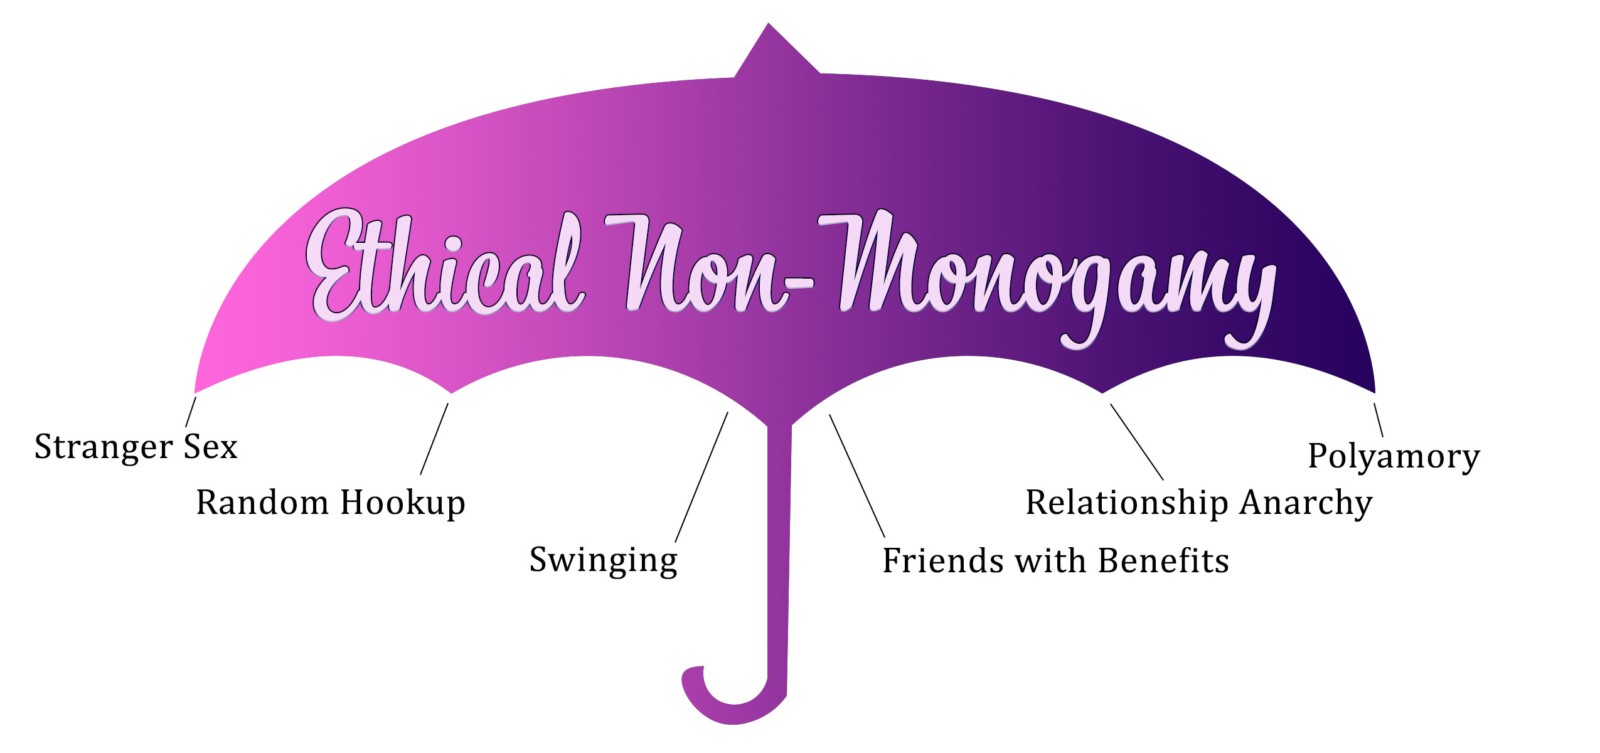 Types of Ethical Non-Monogamy